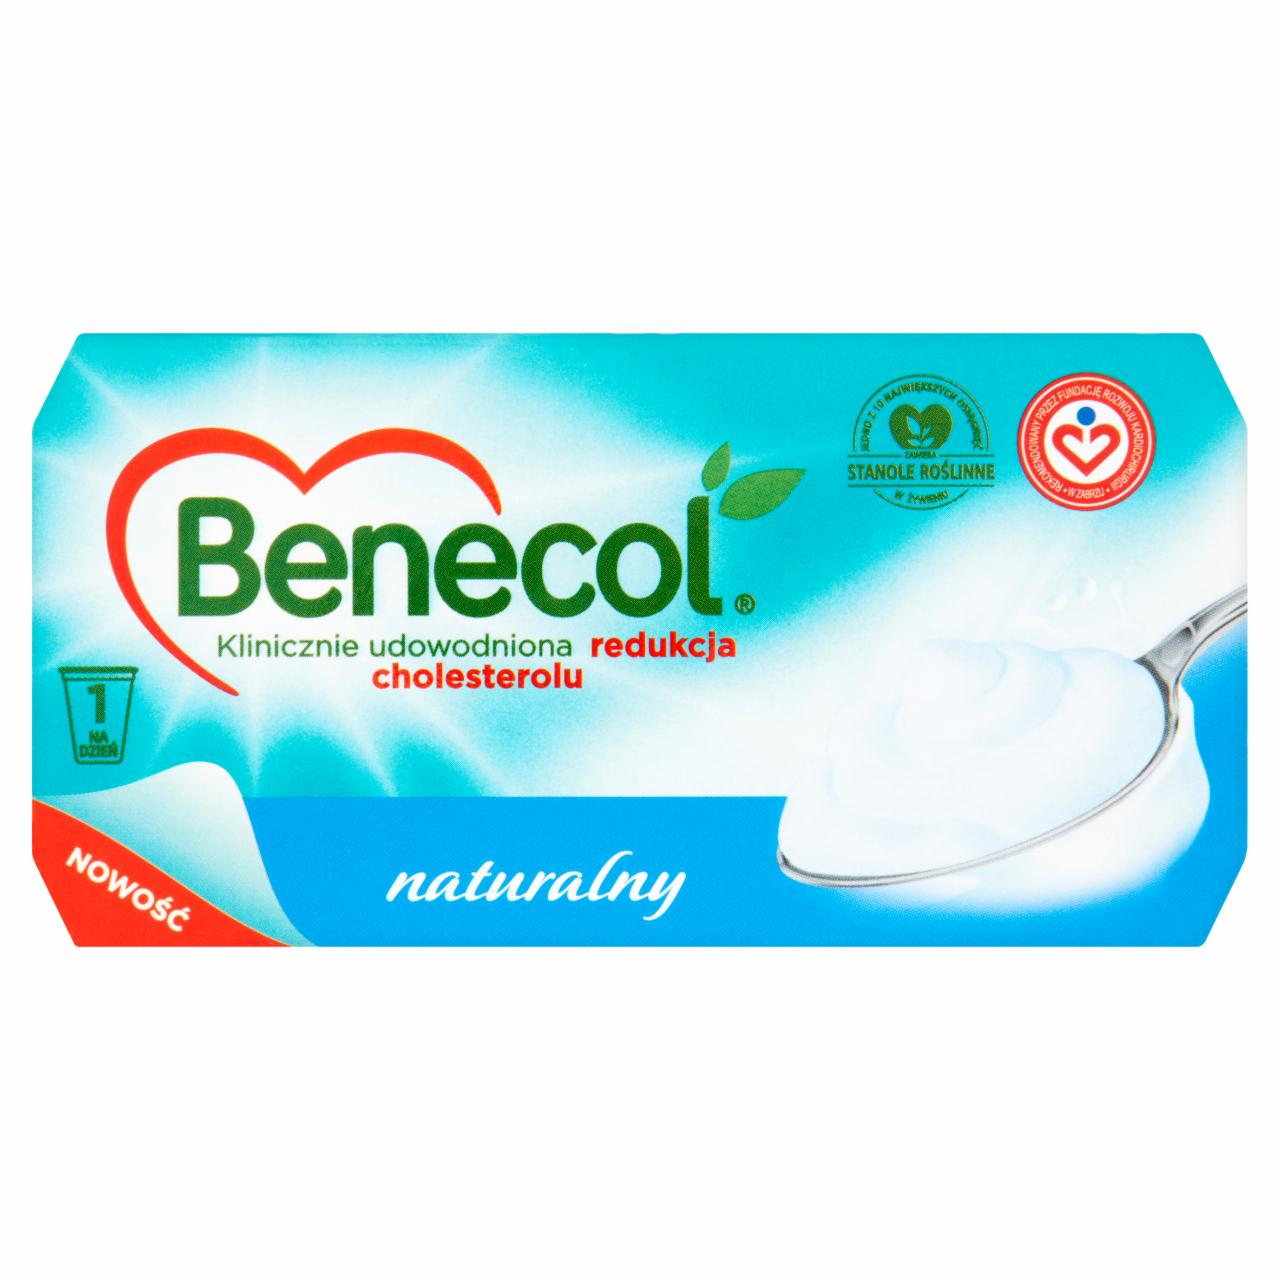 Zdjęcia - Benecol Naturalny Produkt mleczny naturalny z dodatkiem stanoli roślinnych 250 g (2 sztuki)